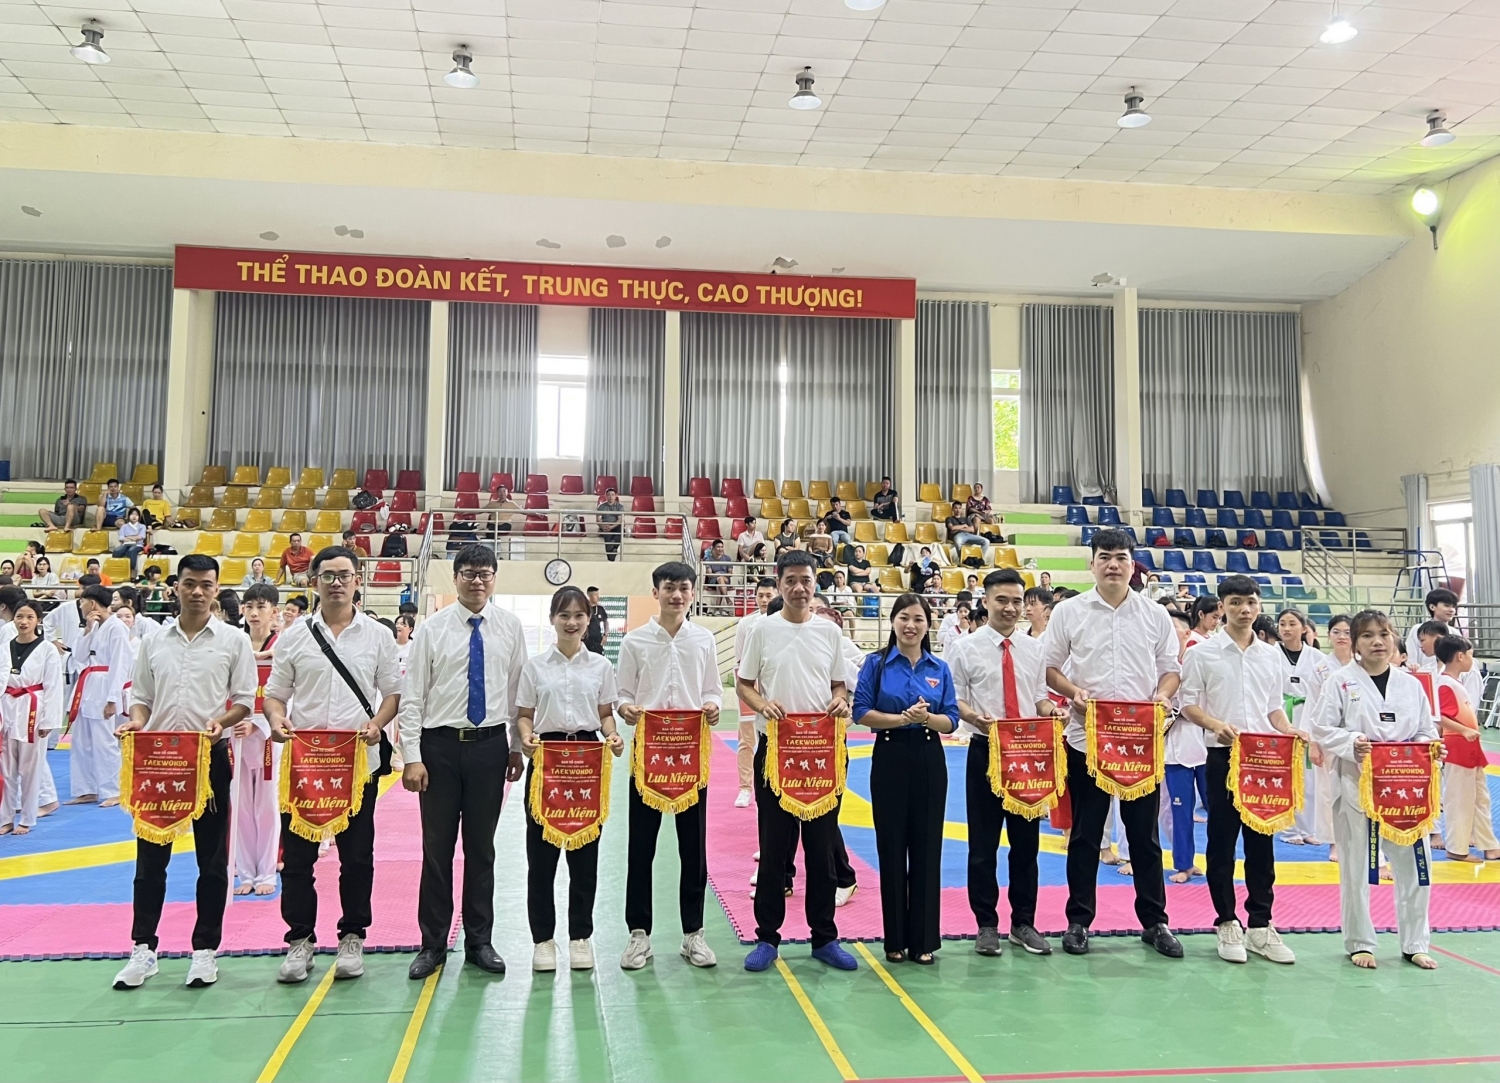 Đồng chí Nông Thị Nhung –  Phó Bí thư Tỉnh Đoàn Cao Bằng trao quà lưu niệm cho đại diện 08 đoàn thuộc các câu lạc bộ Taekwondo